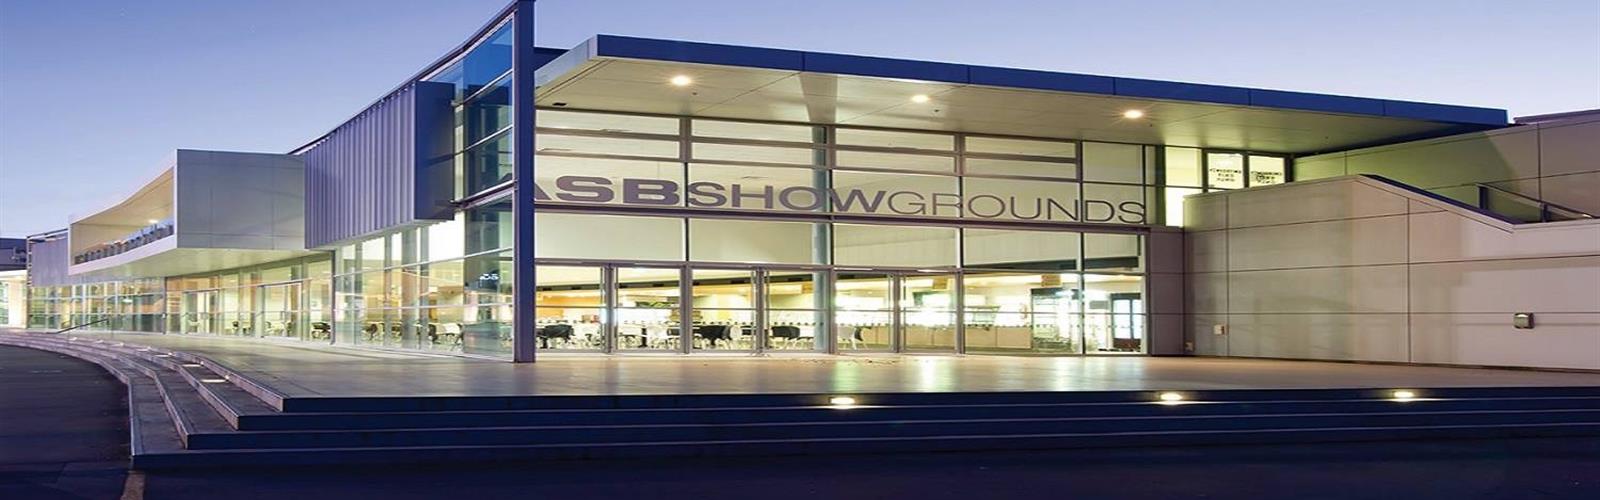 ASB Showgrounds Auckland Convention/Exhibition Centre Auckland Venue